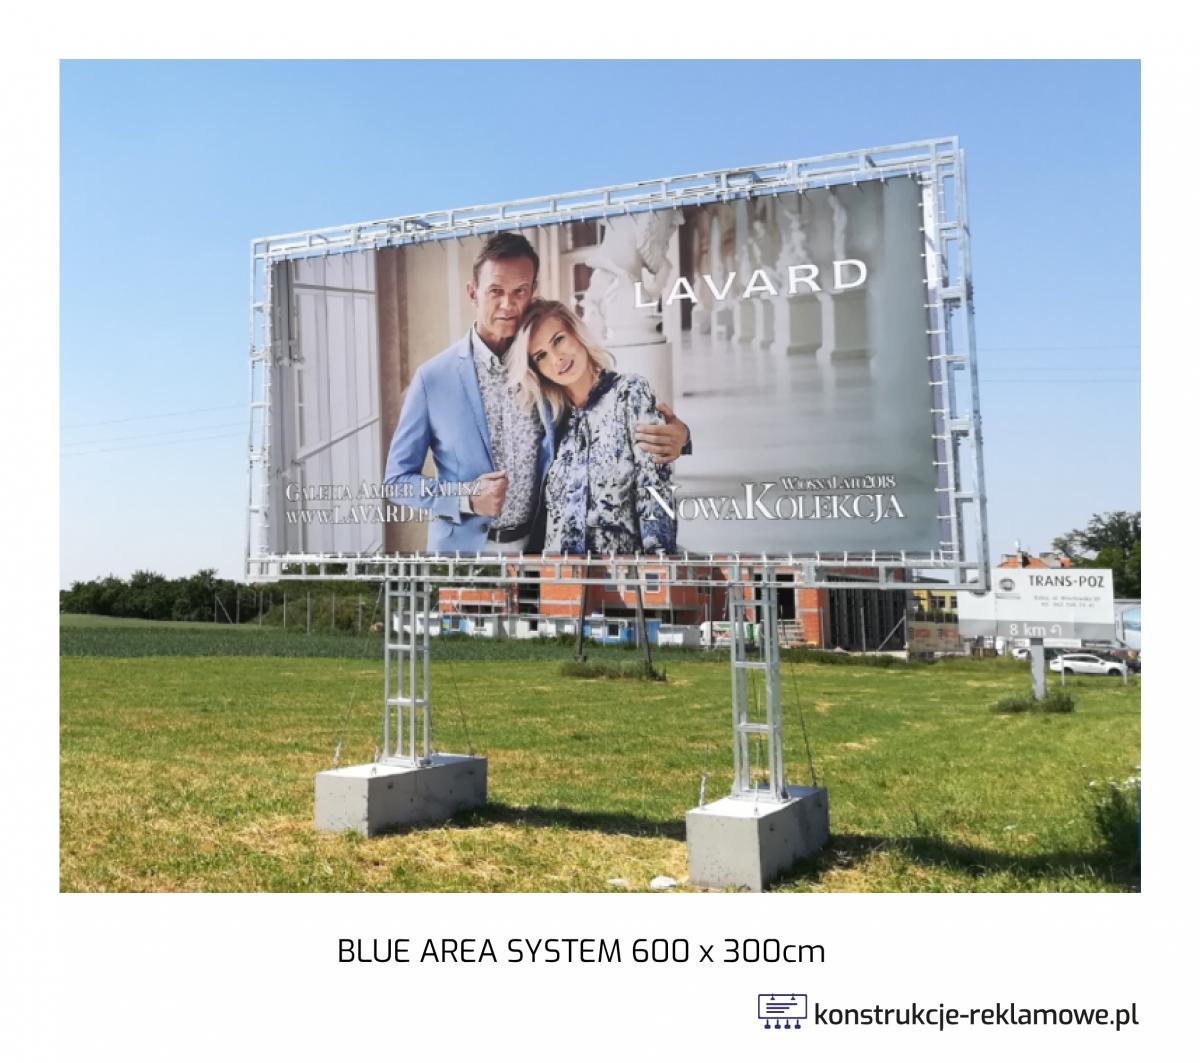 Blue Area System bilboard 600 x 300cm - konstrukcje-reklamowe.pl